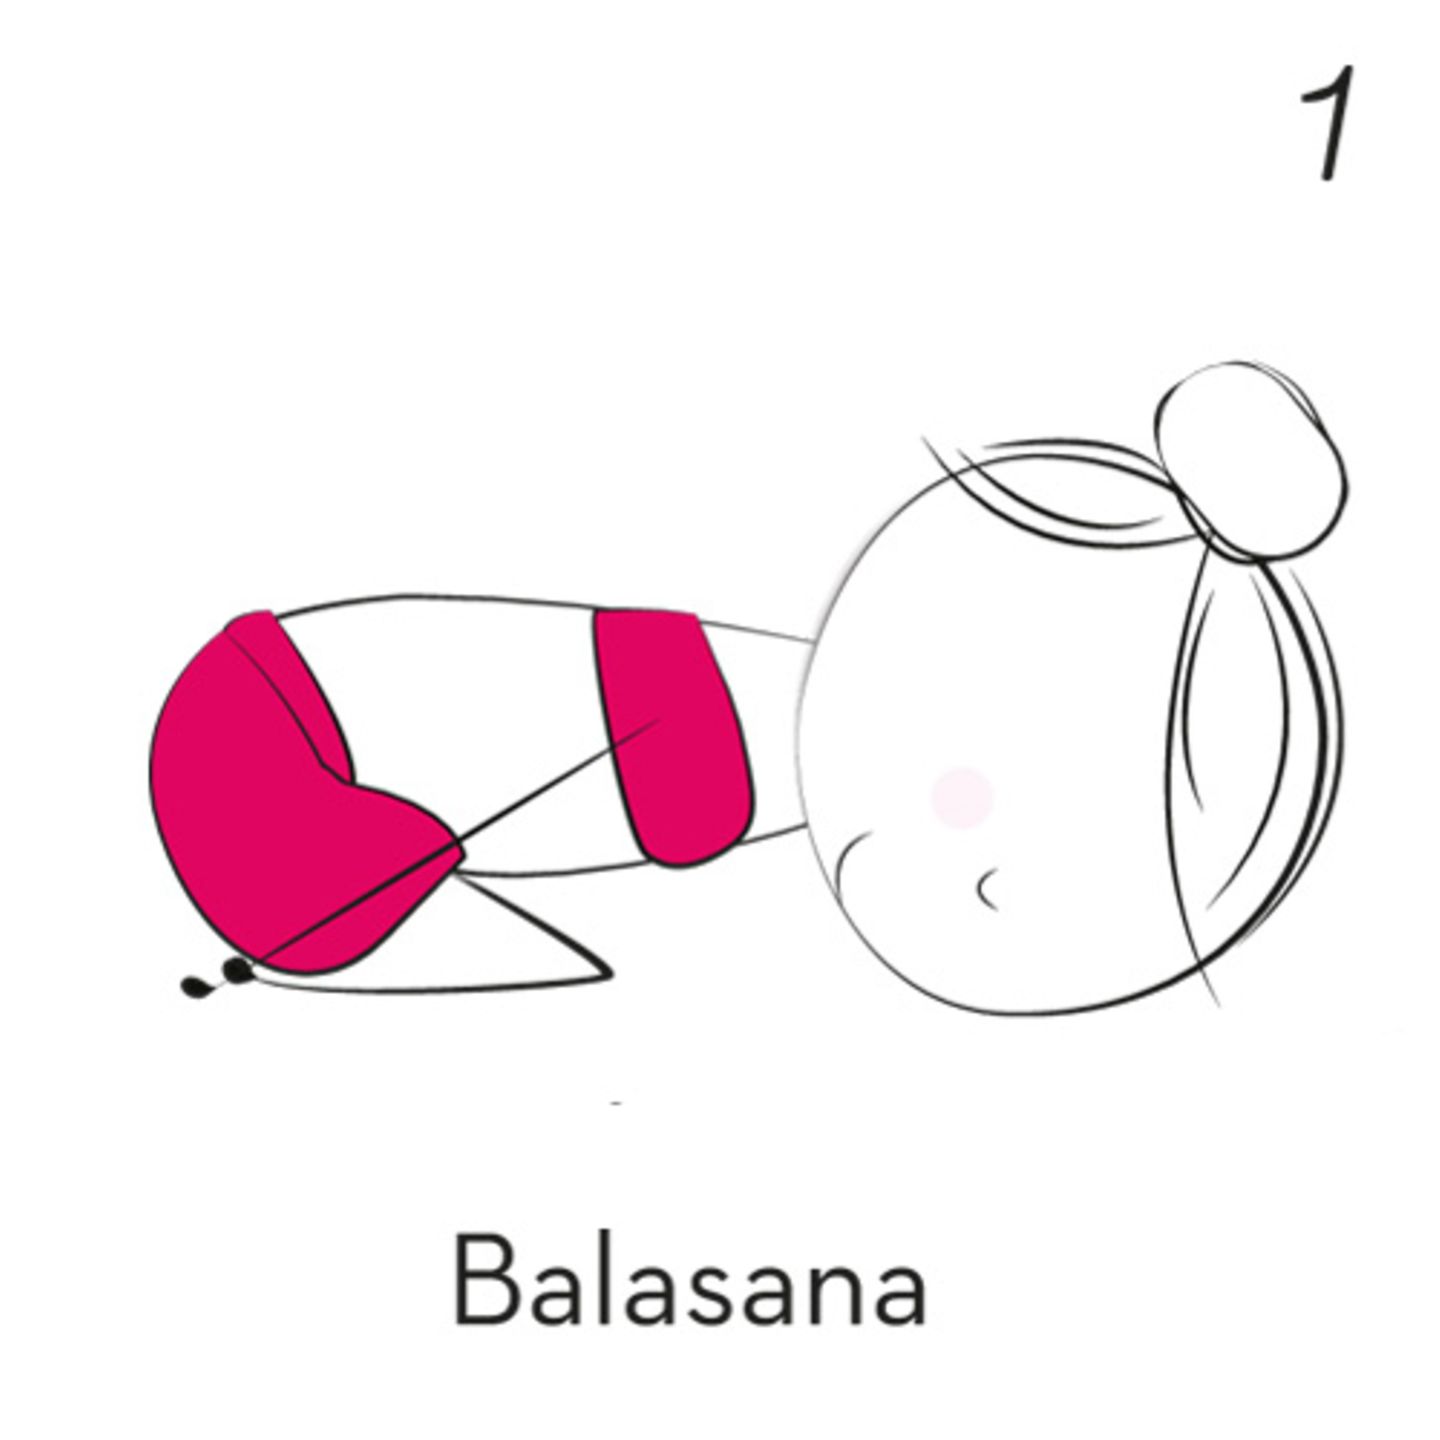 1) Balasana (Kindhaltung)